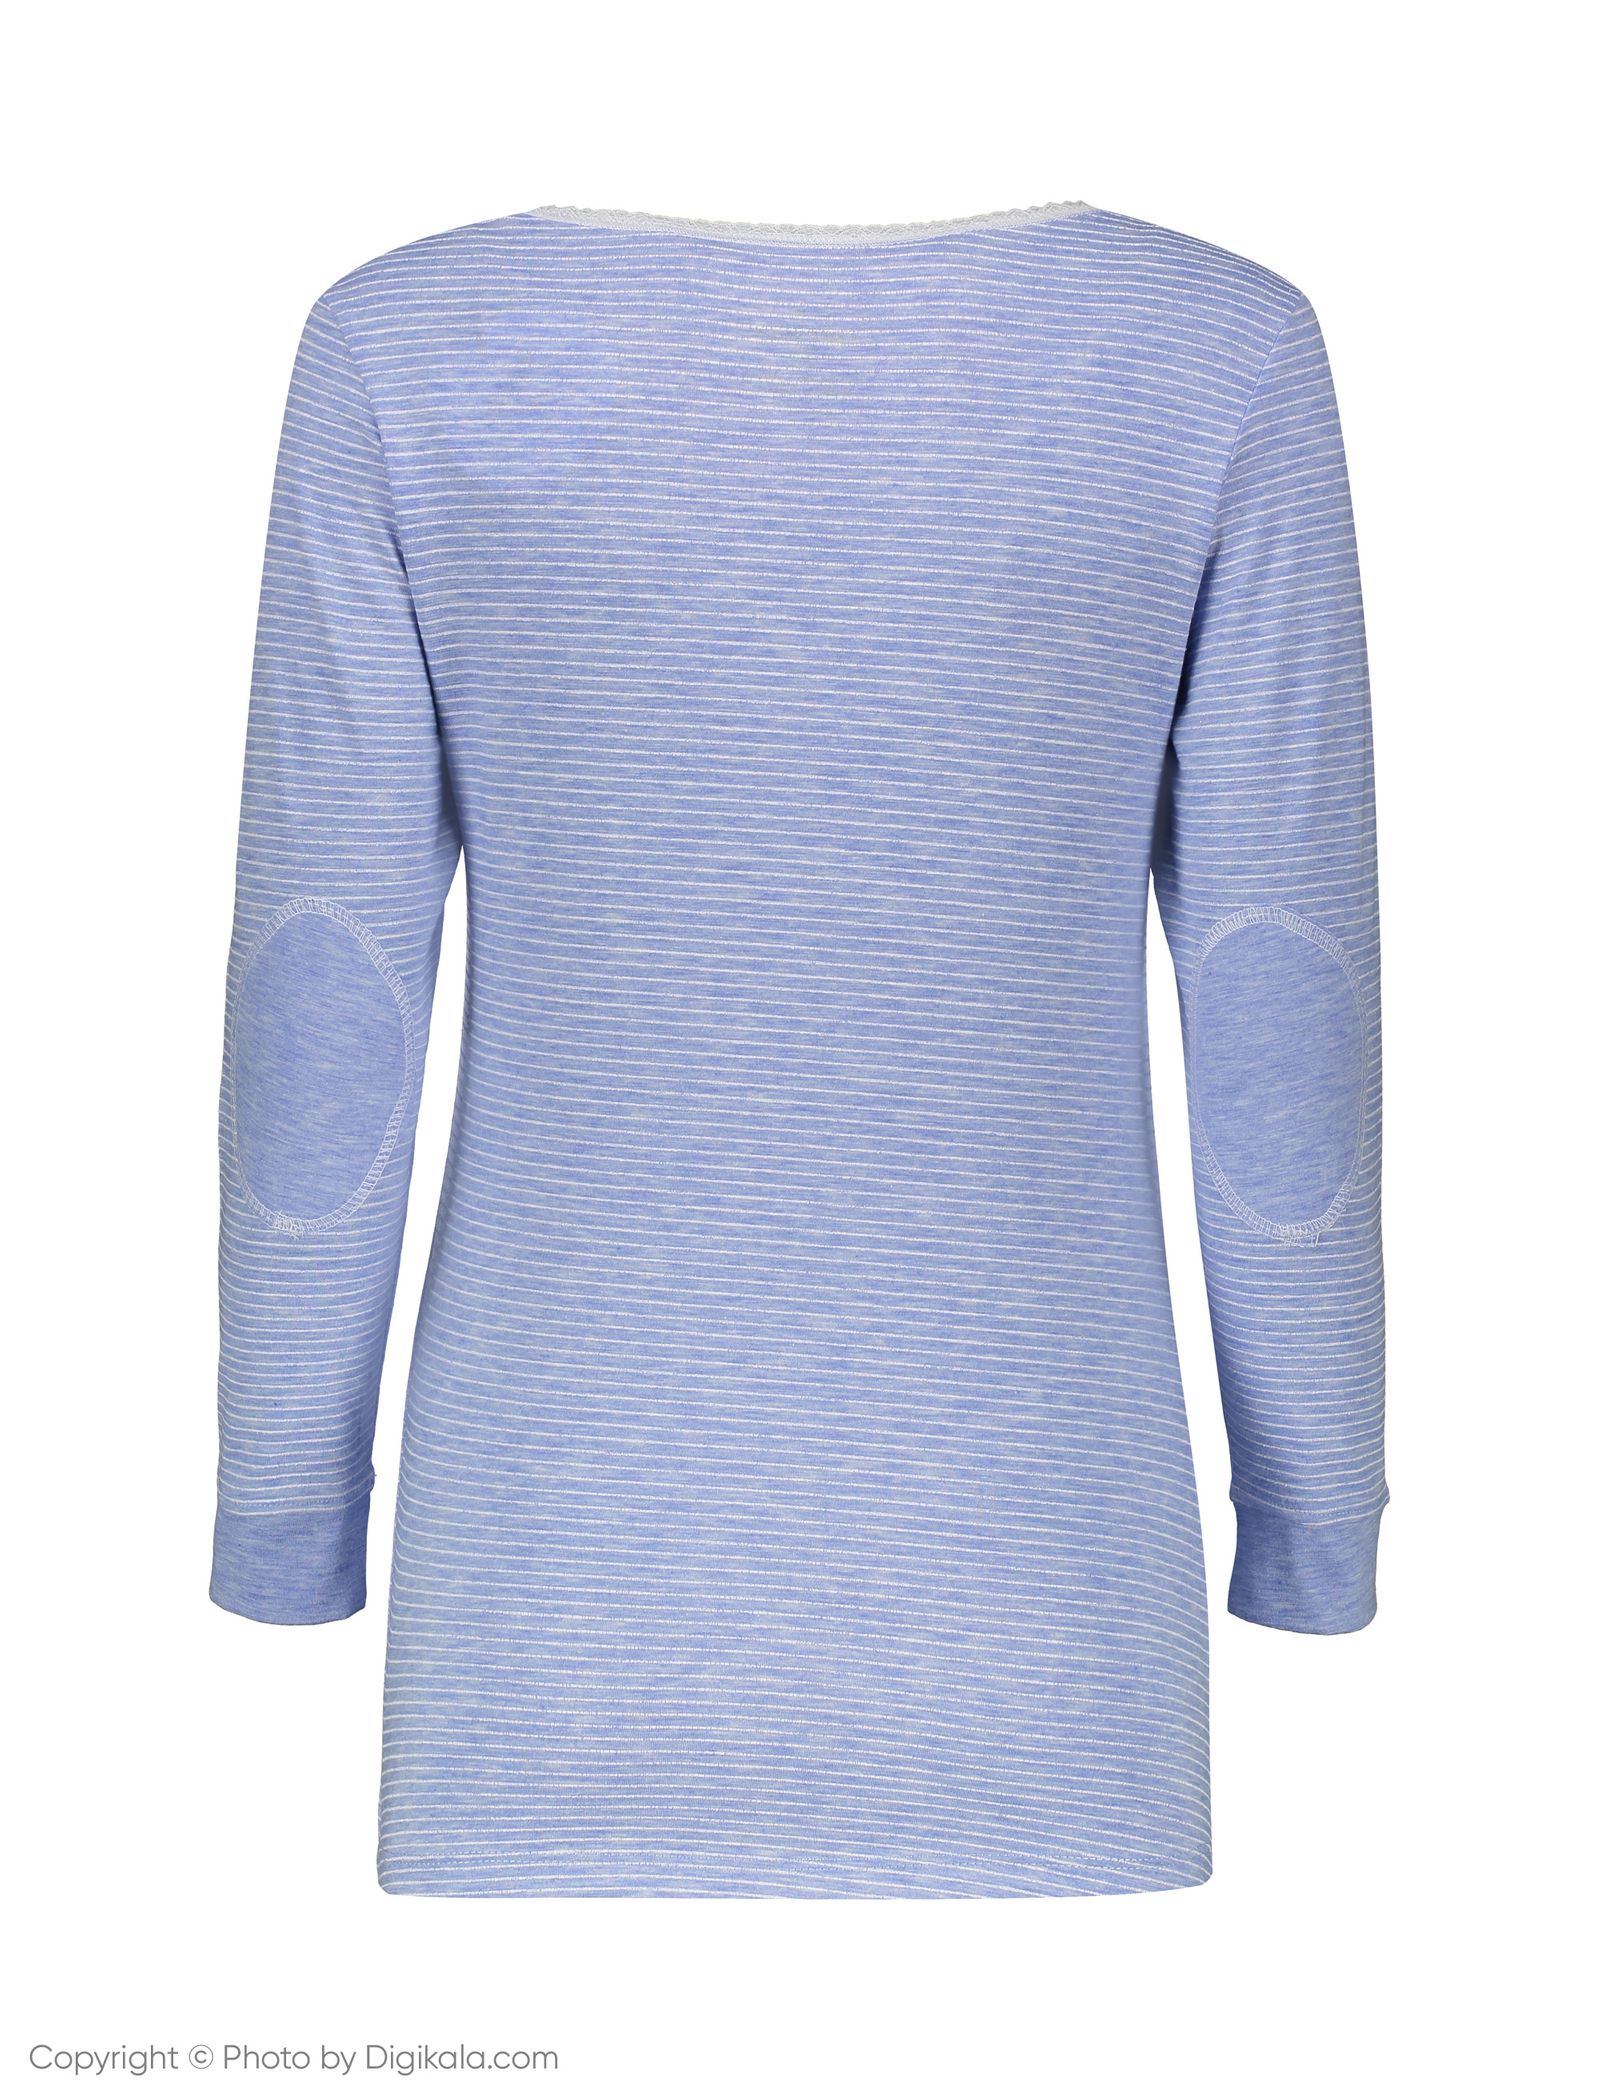 ست تی شرت و شلوار راحتی زنانه ناربن مدل 1521154-51 - آبی آسمانی - 5